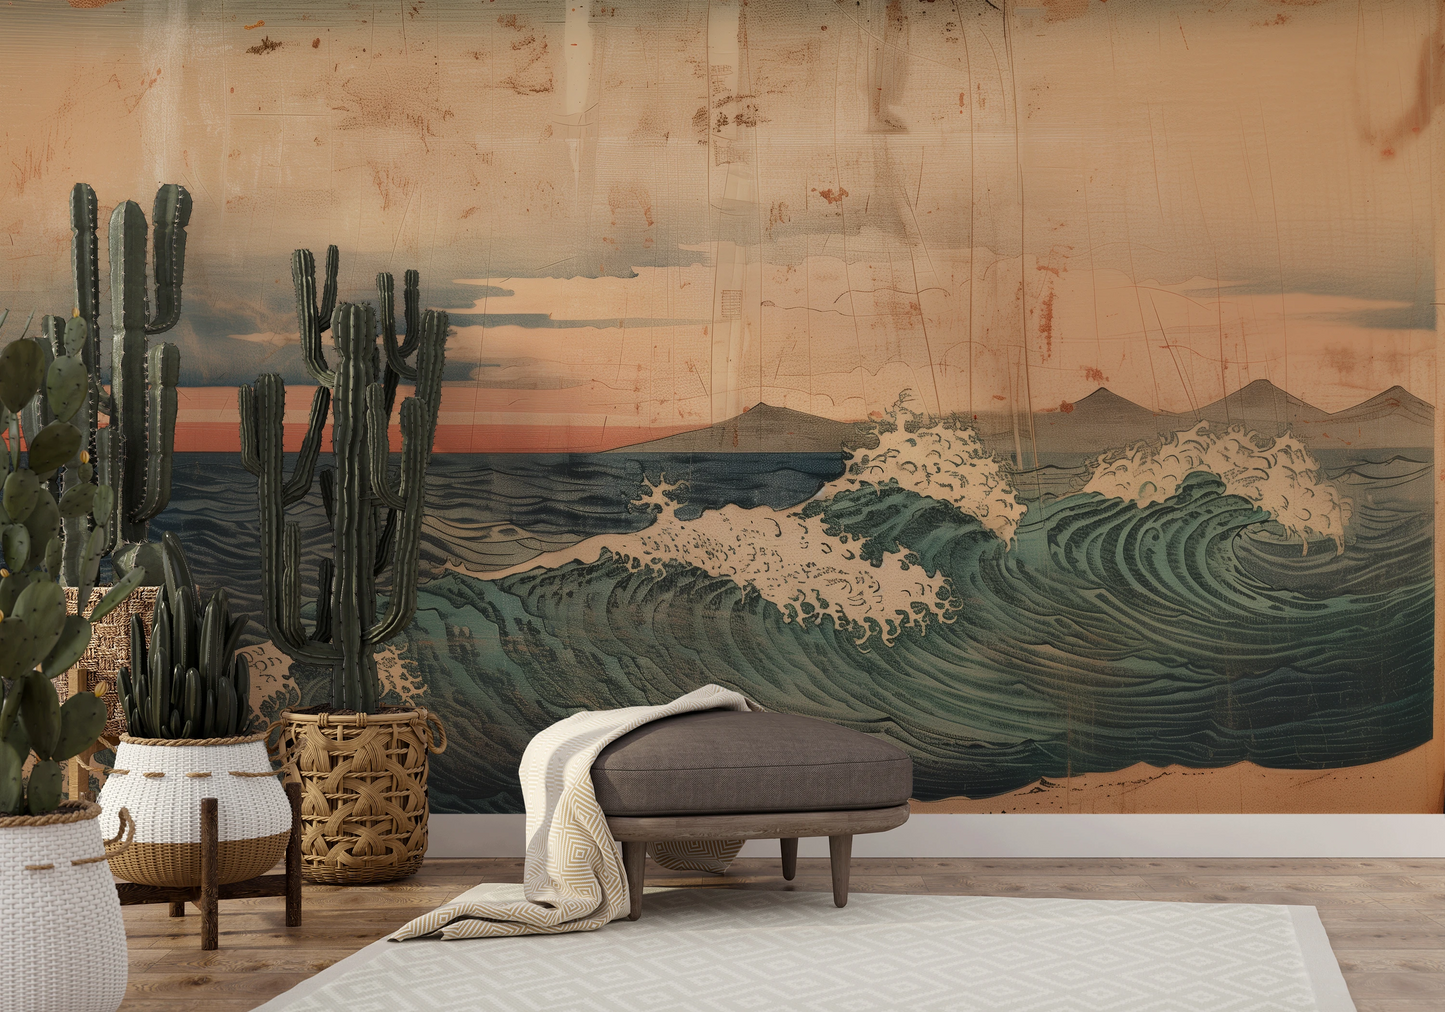 Fototapeta malowana o nazwie Vintage Ocean View pokazana w aranżacji wnętrza.